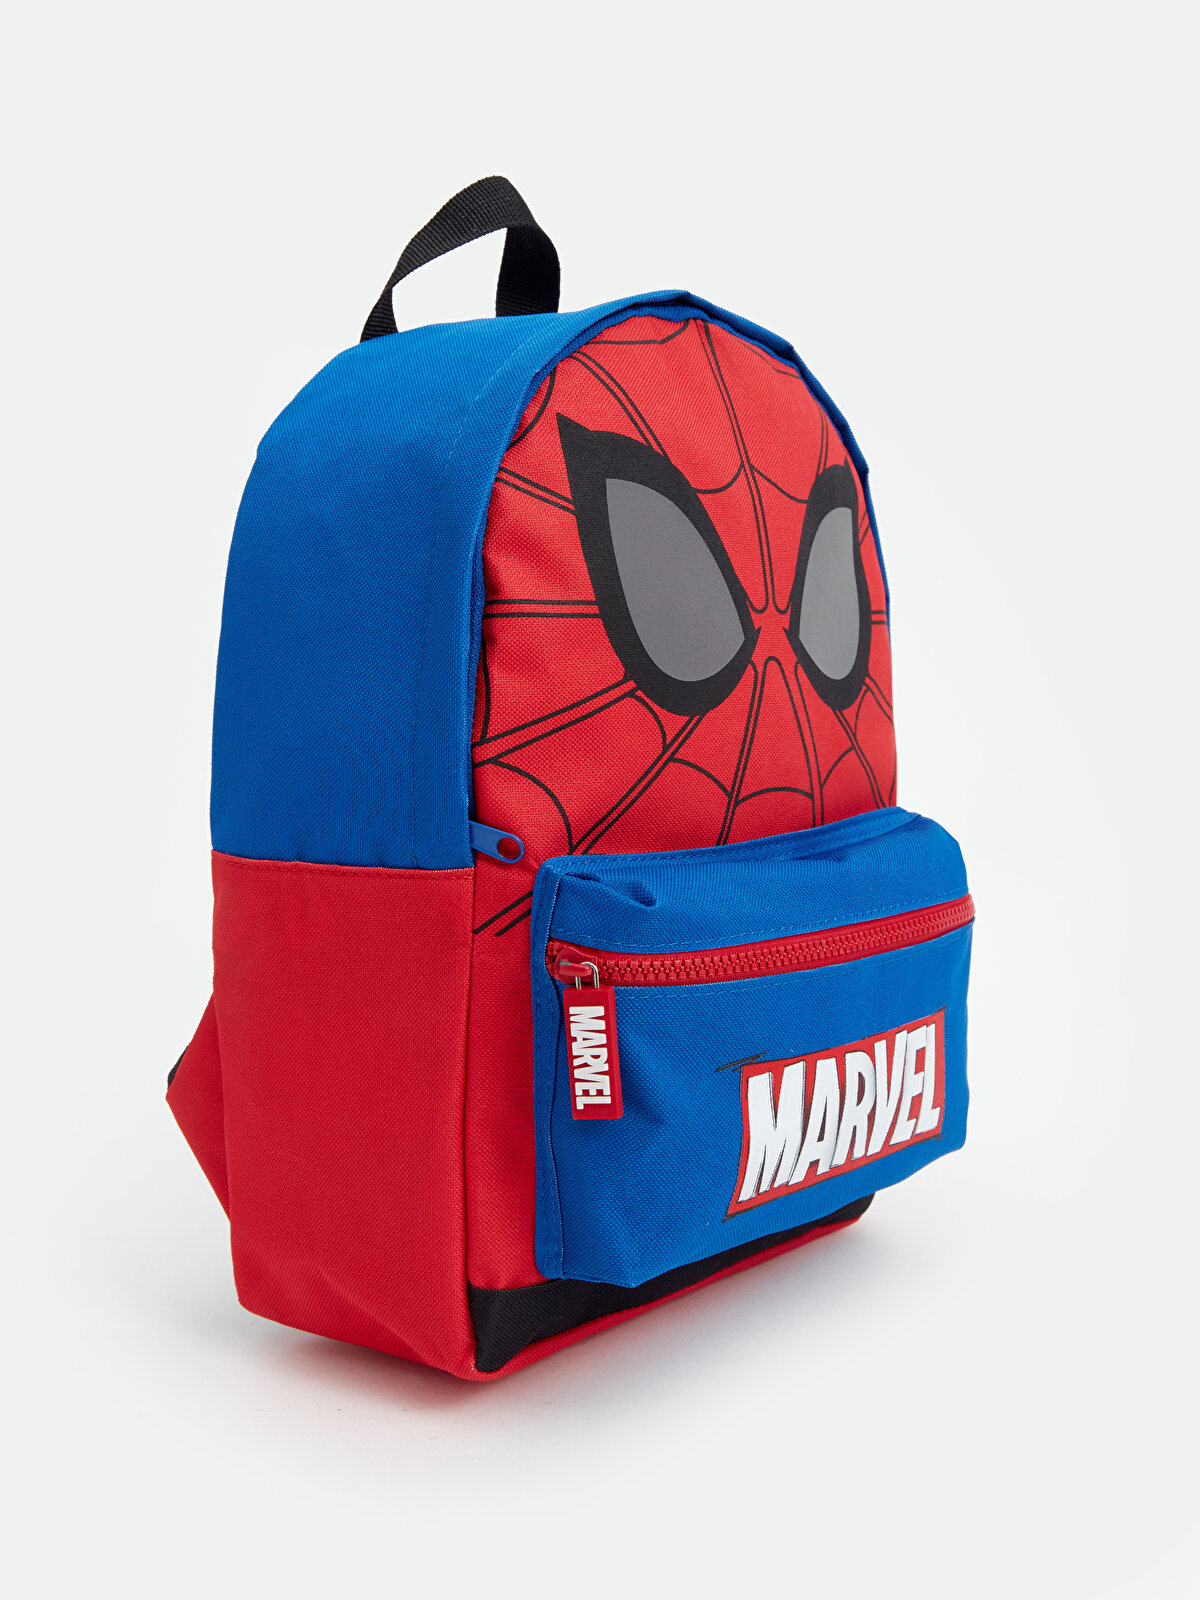 Spiderman Printed Boy's Backpack -S41051Z4-GZX - S41051Z4-GZX - LC Waikiki